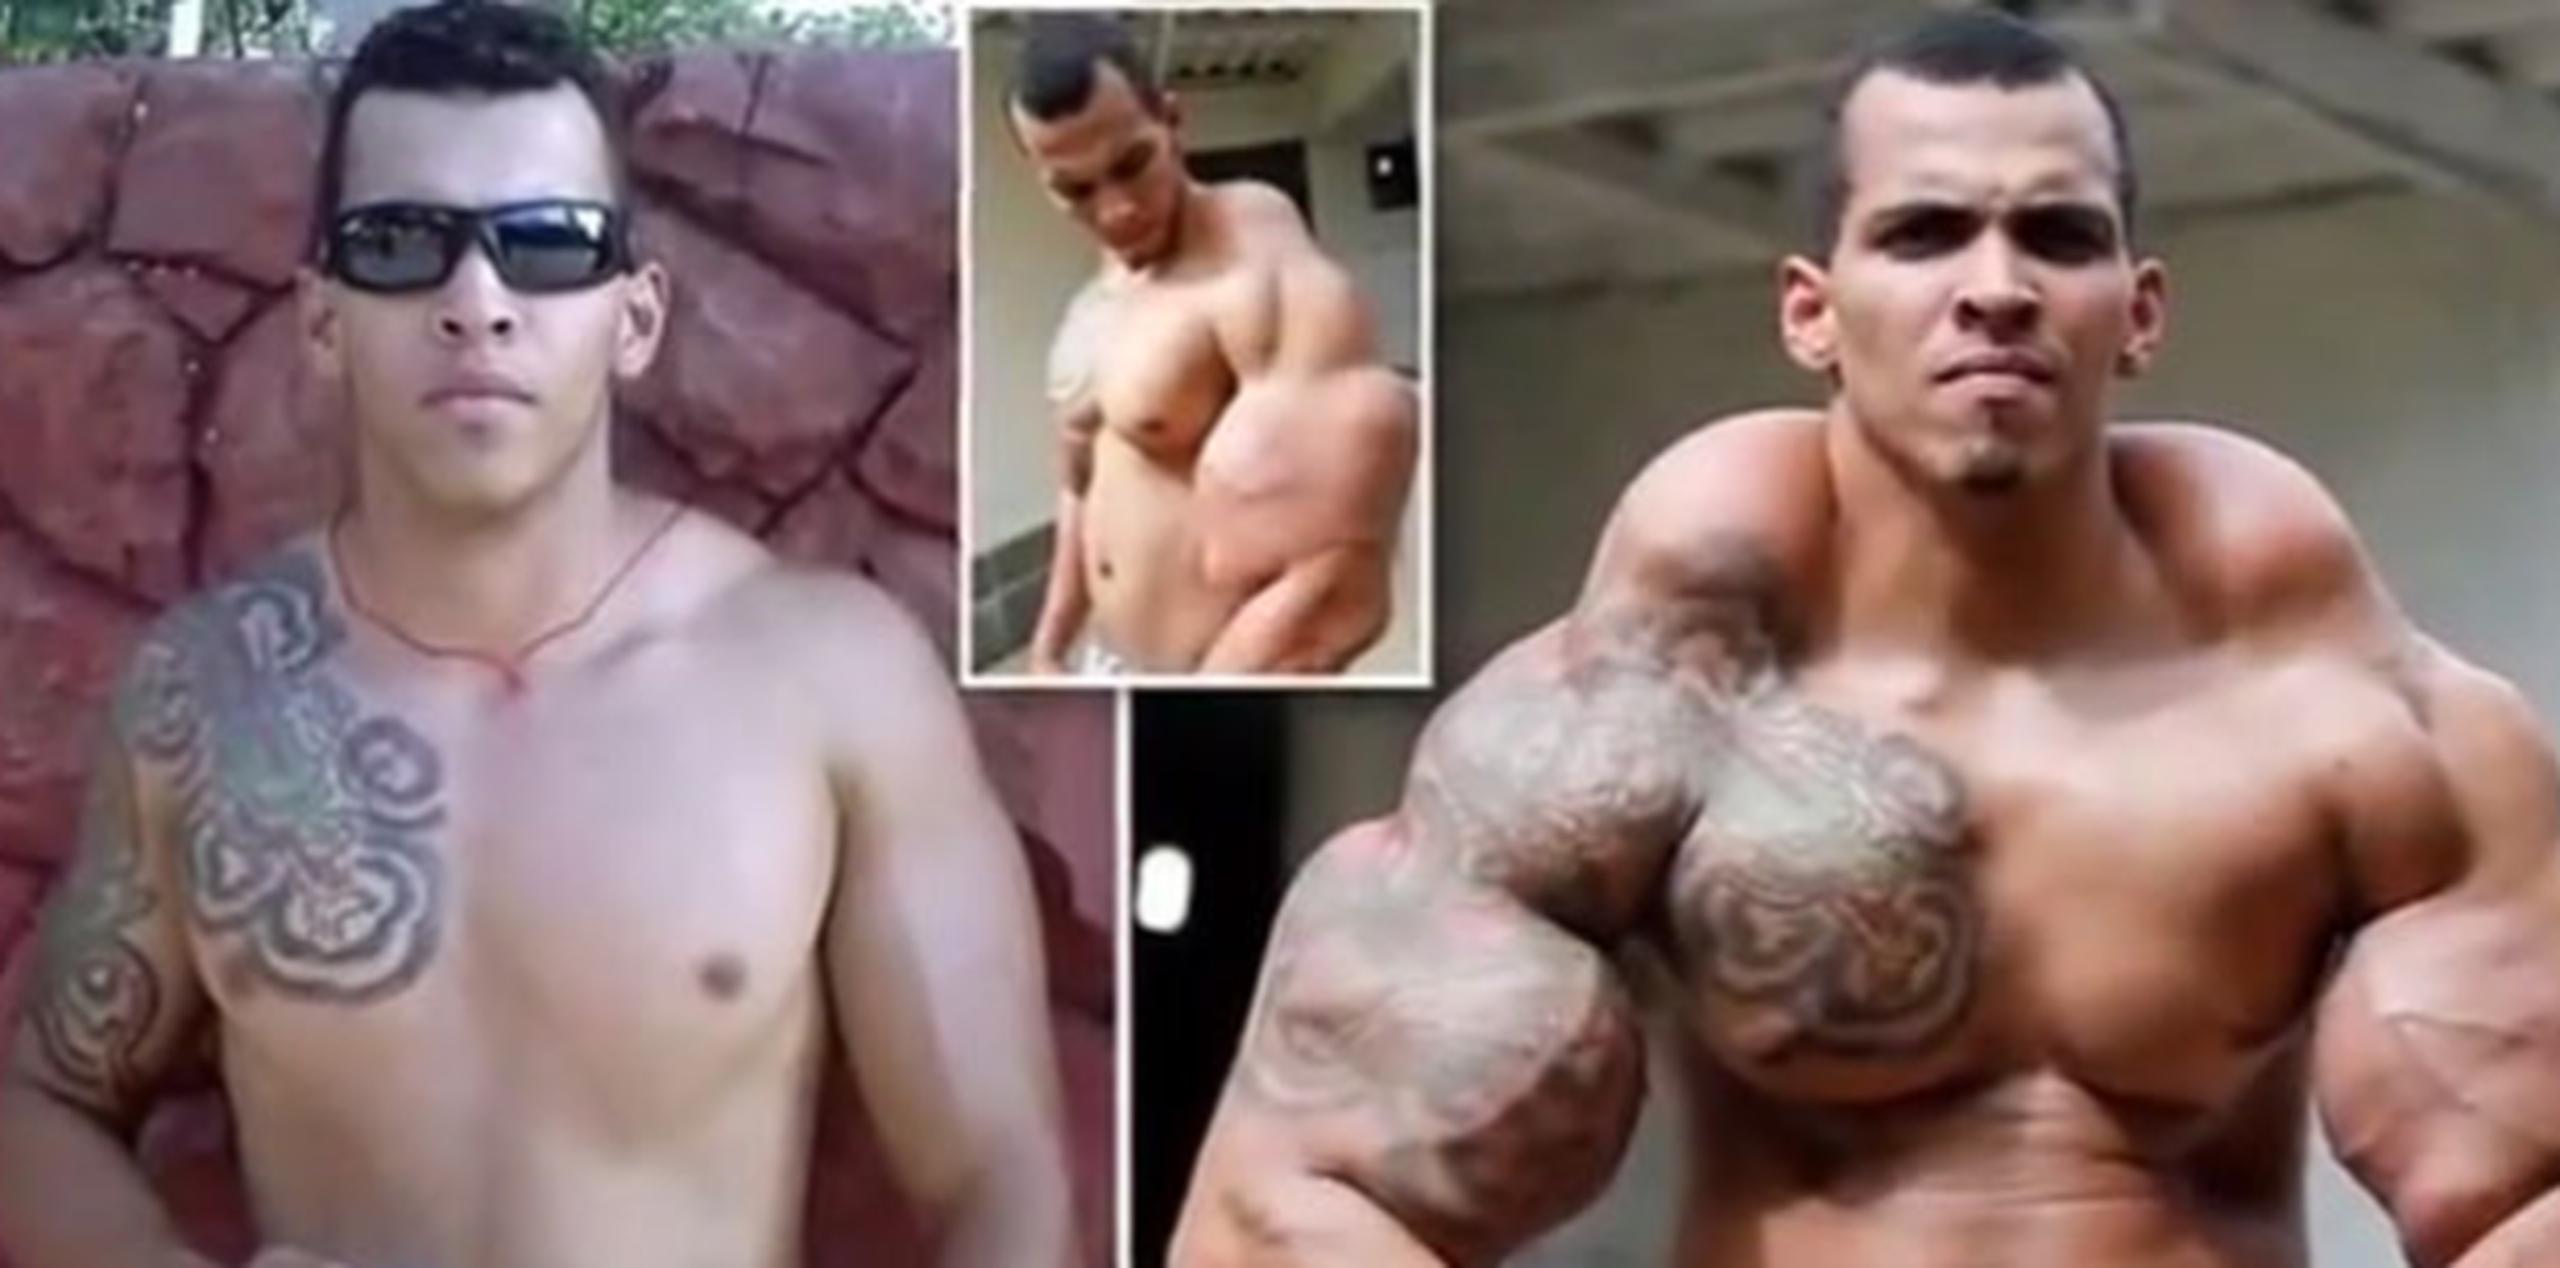 Romario Dos Santos Alves, en fotos antes y después del fármaco, exhortó a otros fisiculturistas a tener cuidado si usan alguna sustancia. (Youtube)